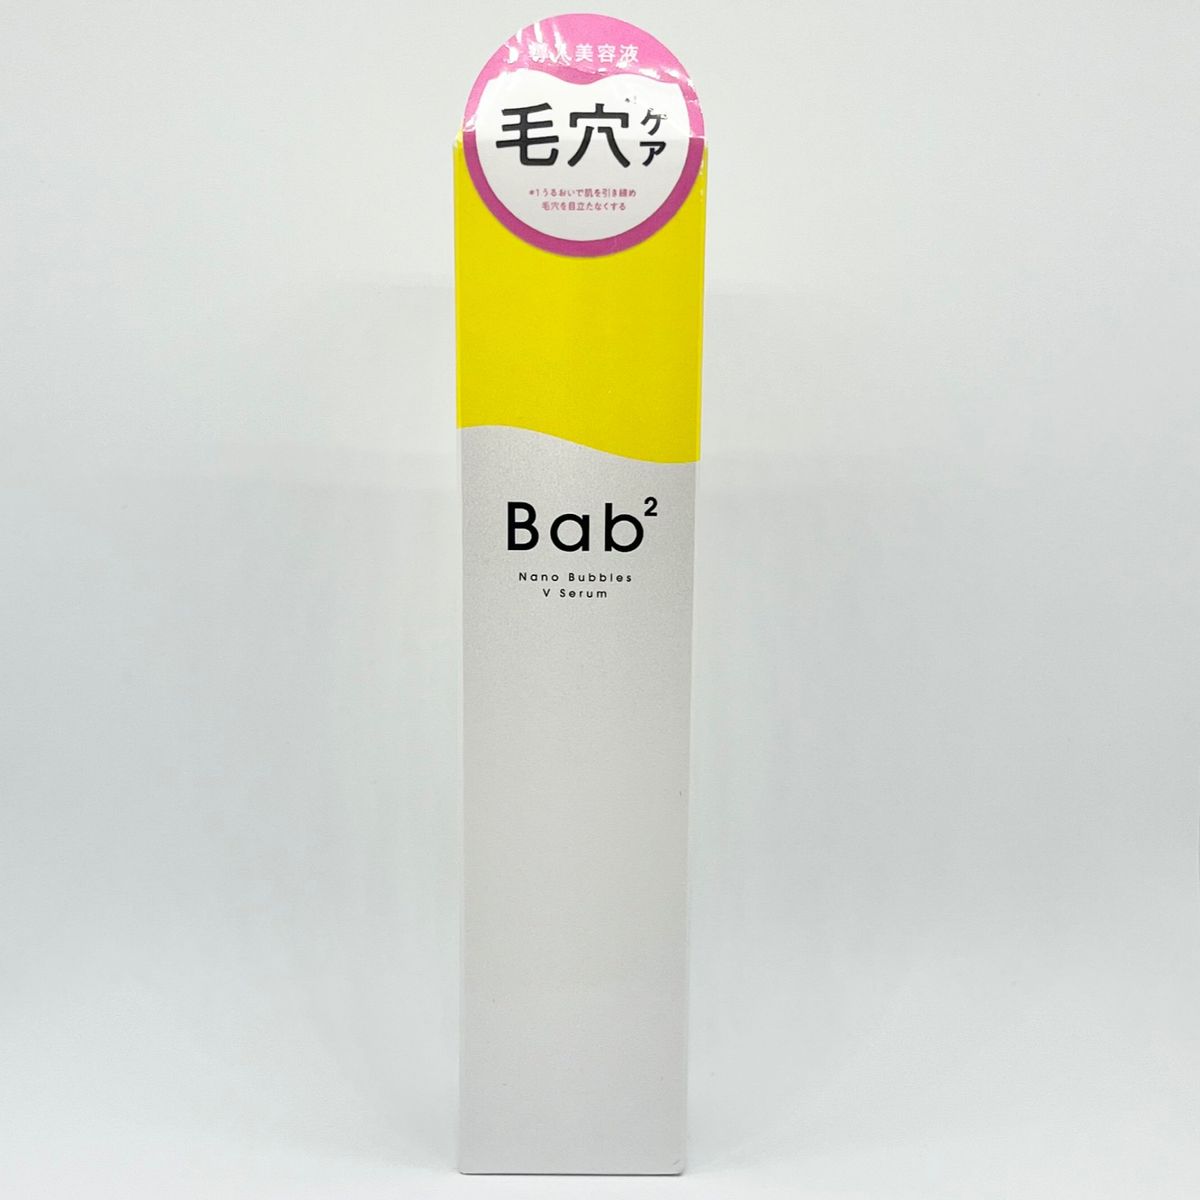 Bab2 (バブバブ) ナノバブルVセラム 55mL 導入美容液 美容液 ビタミンC CICA レチノール (毛穴/保湿/無添加)